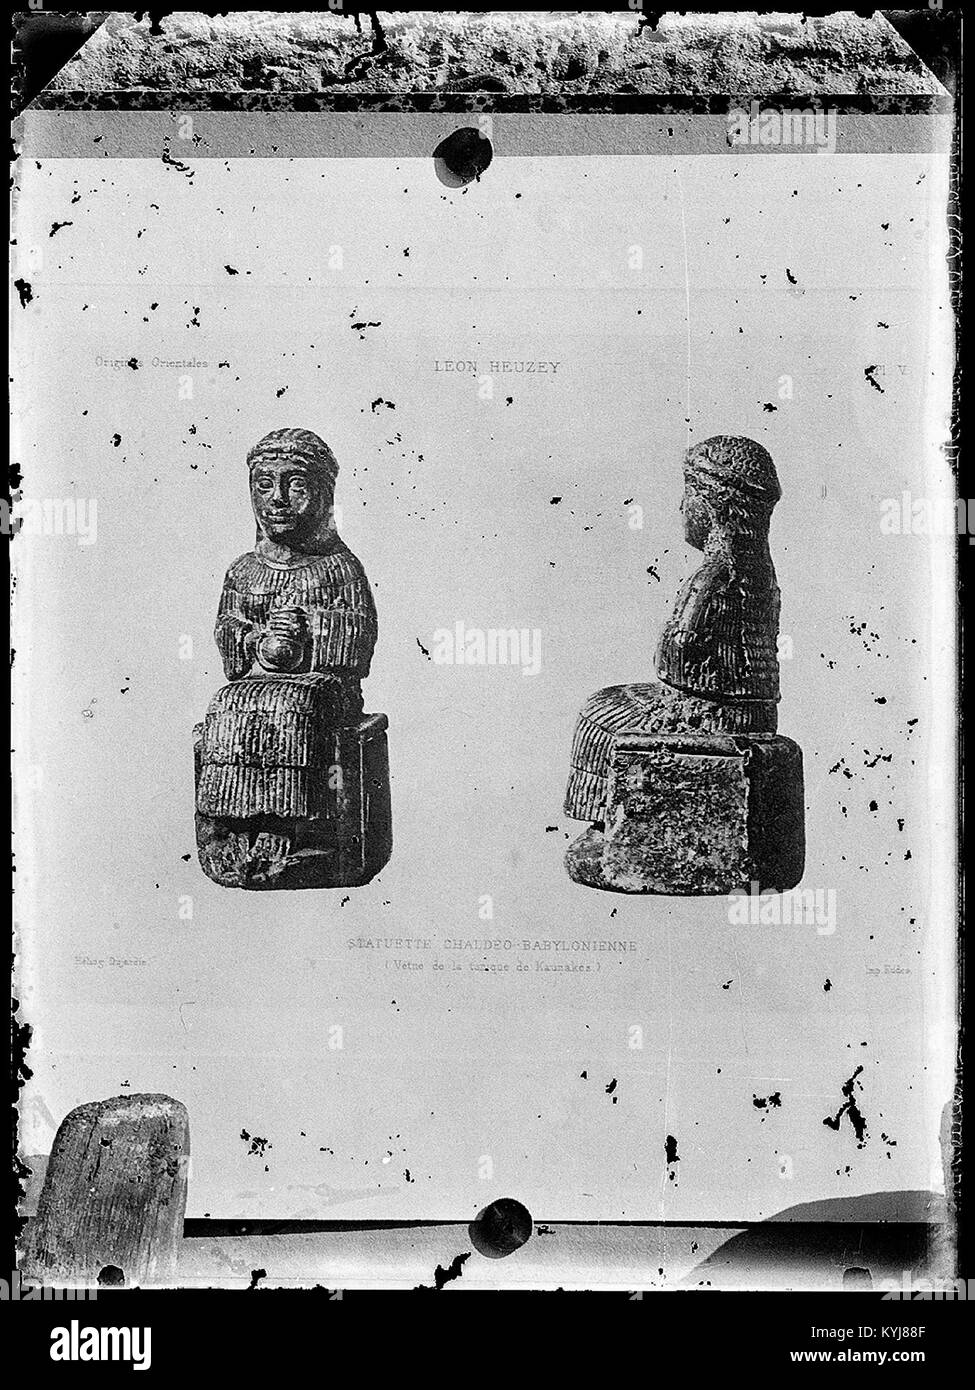 Statuette Chaldéo-Babylonnienne vêtue de la tunique de Kaunakes. - Fonds Berthelé - 49Fi1528 Stock Photo